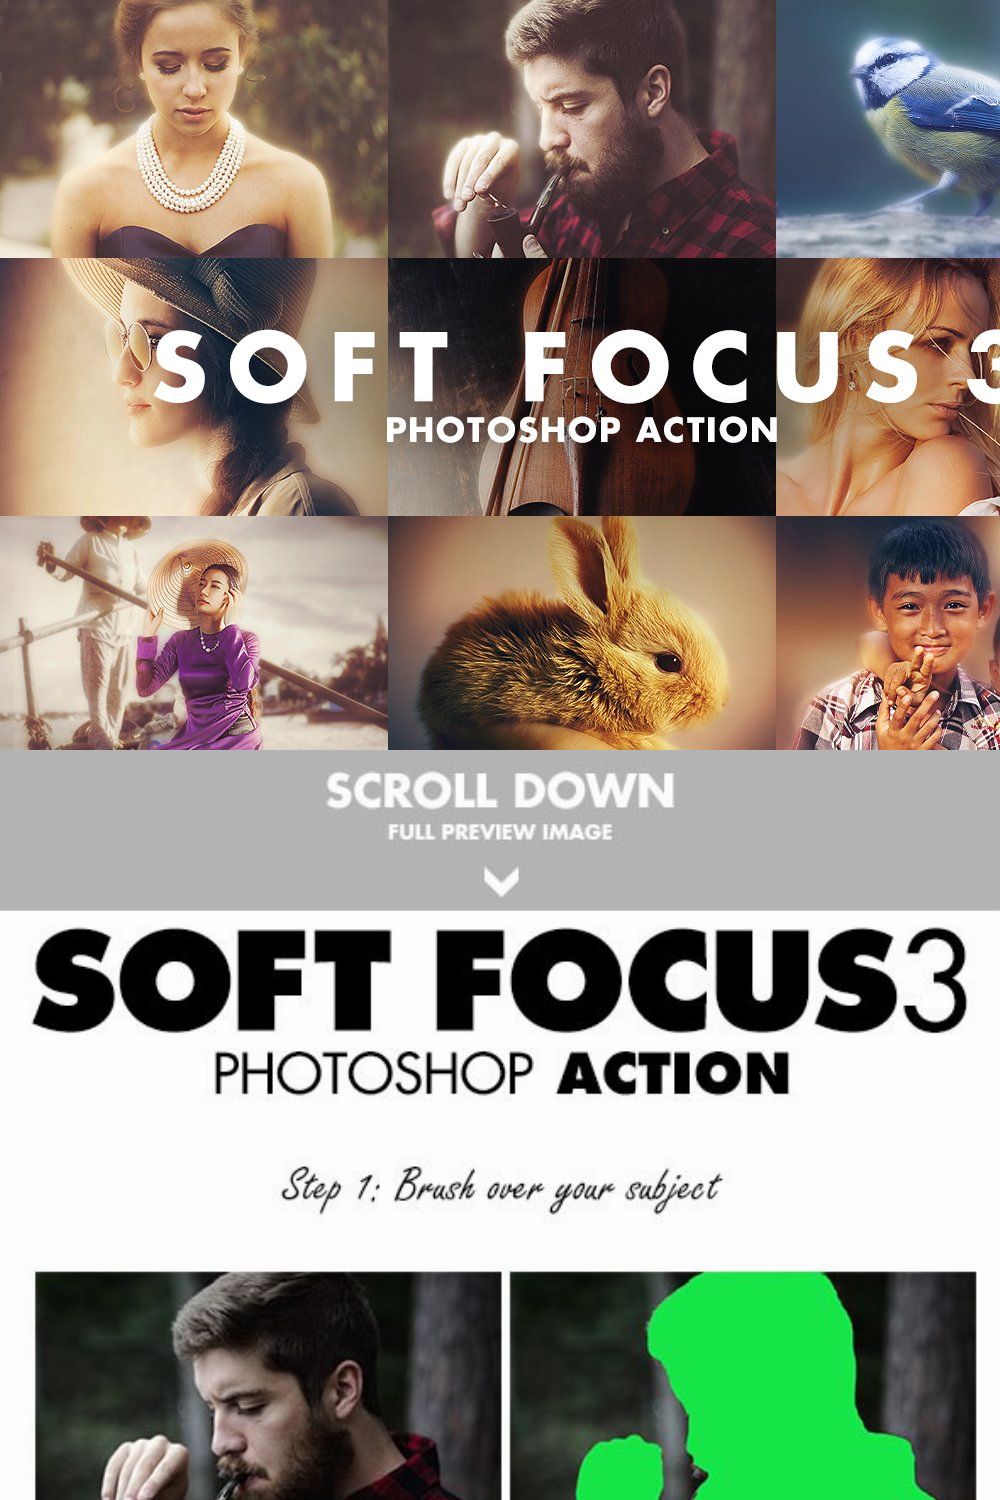 Soft Focus 3 Photoshop Action pinterest preview image.